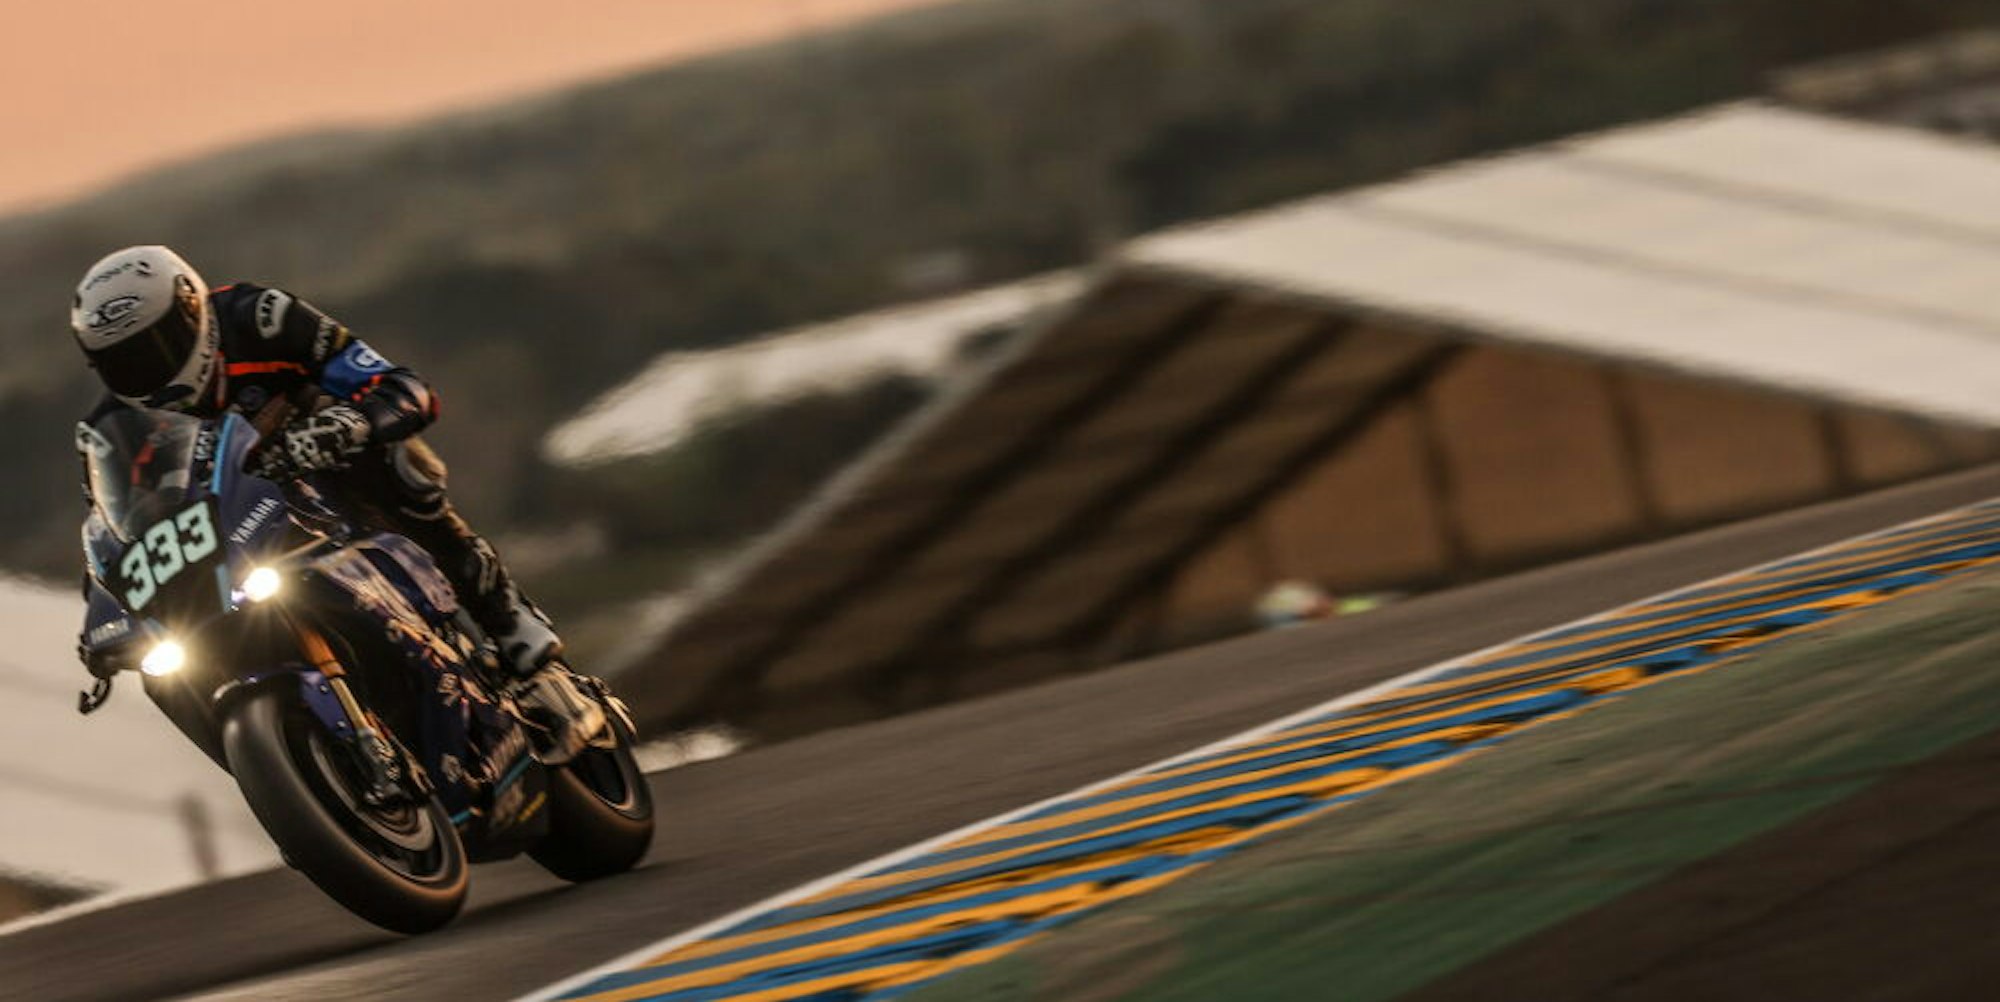 Als am frühen Morgen die Sonne über Le Mans aufging, fuhr Florian Alt auf seiner Yamaha mit der Nummer 333 noch Richtung Podium.